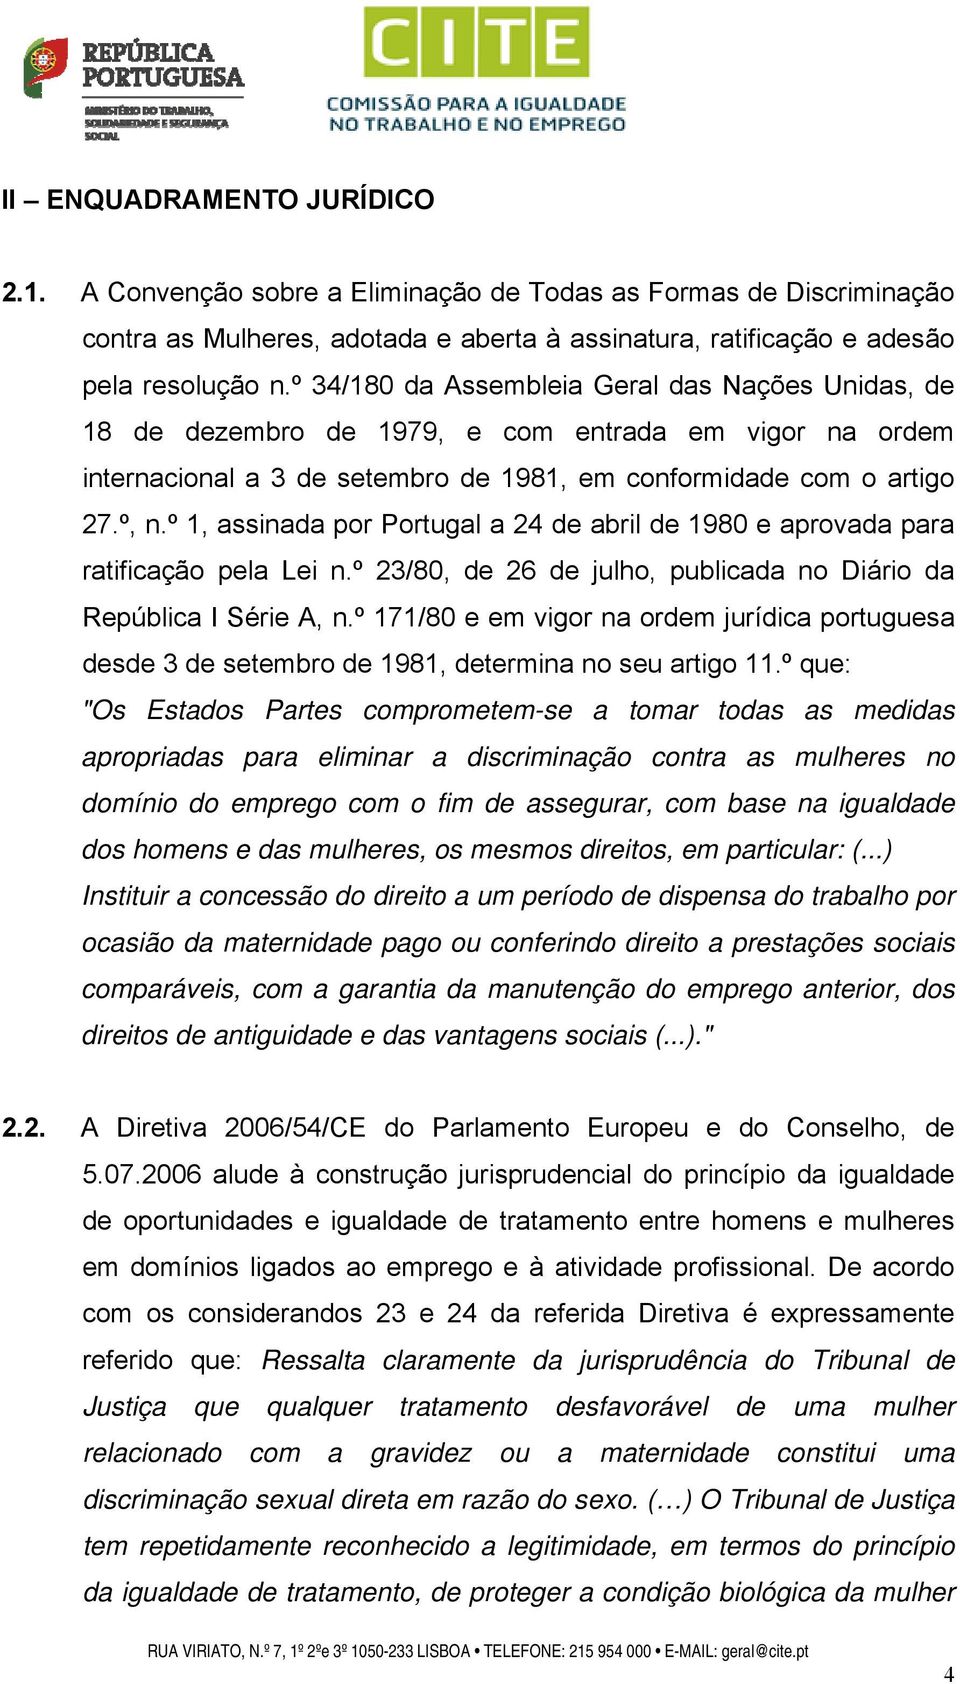 º 1, assinada por Portugal a 24 de abril de 1980 e aprovada para ratificação pela Lei n.º 23/80, de 26 de julho, publicada no Diário da República I Série A, n.